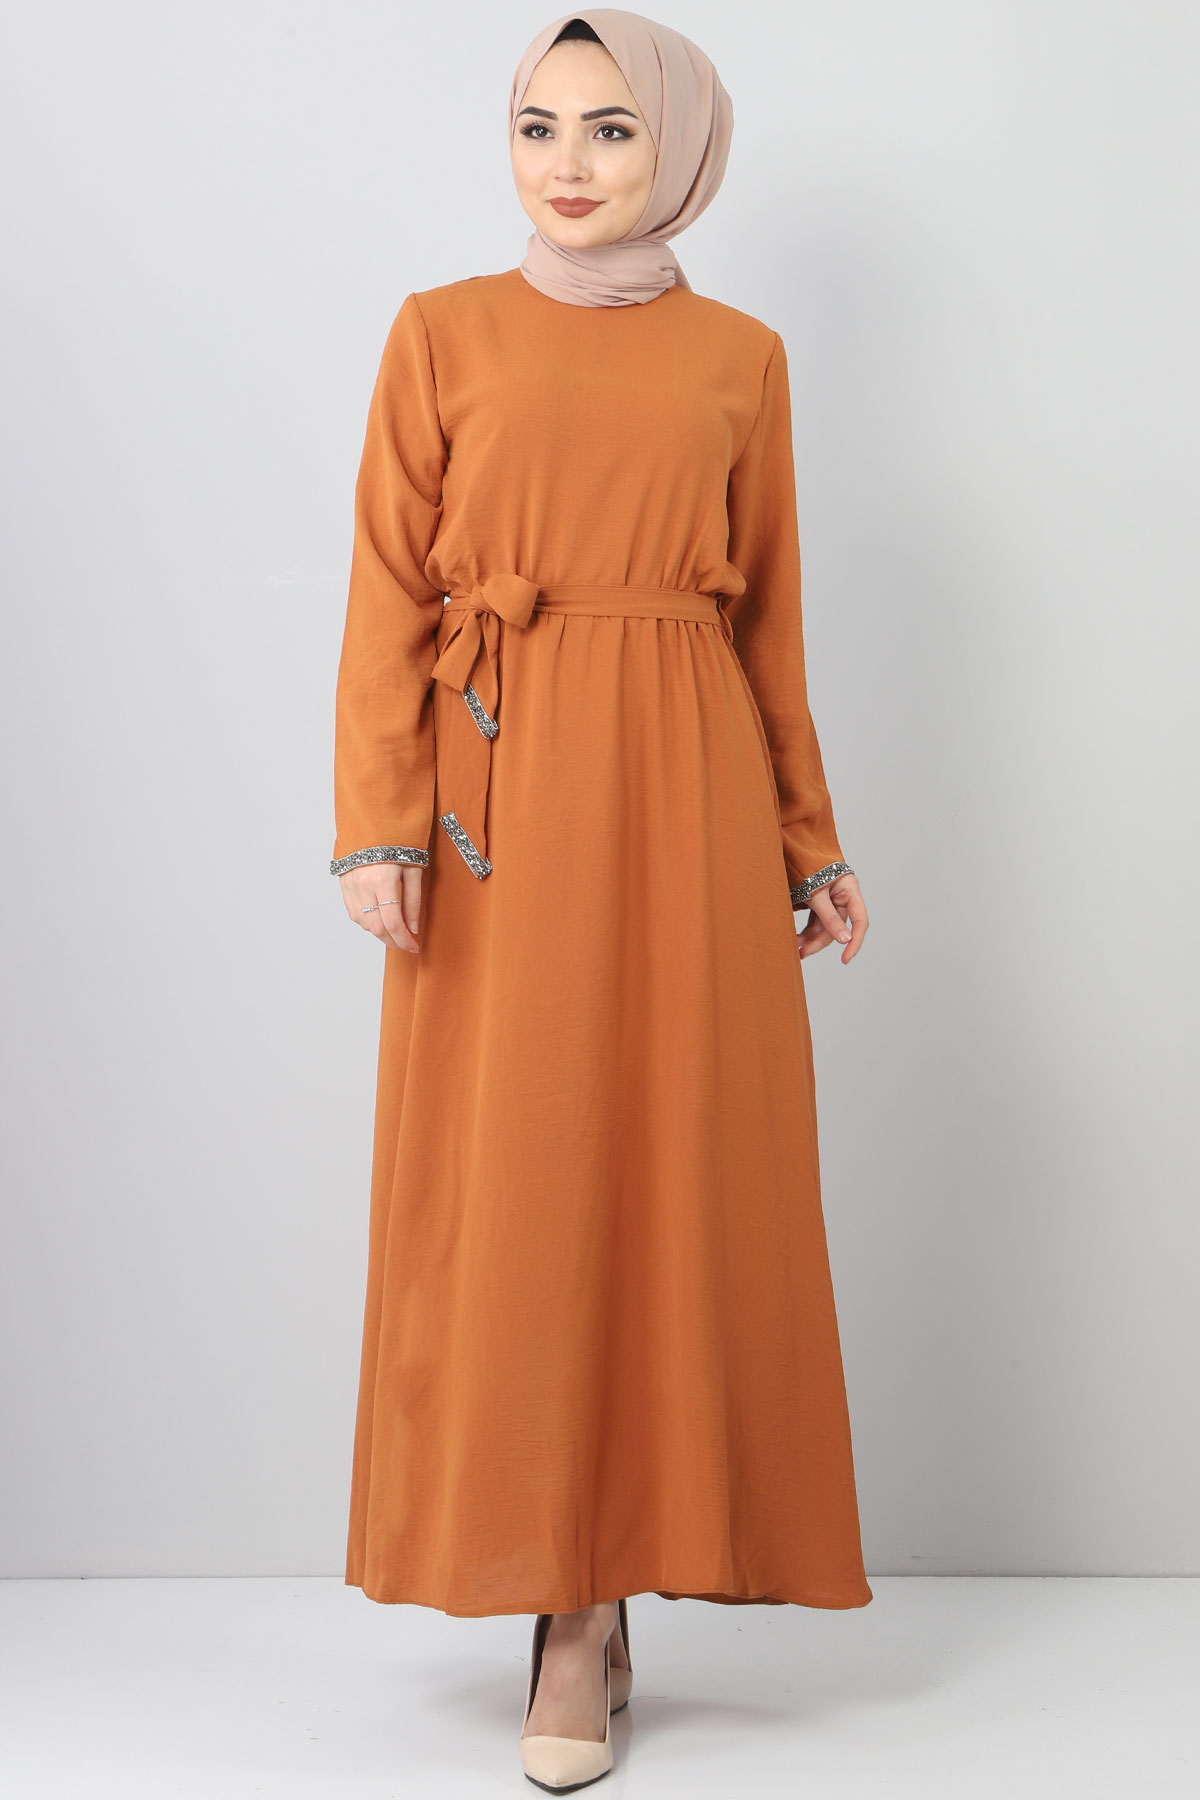 Tesettür Dünyası - Embroidered Dress TSD6555 Brown